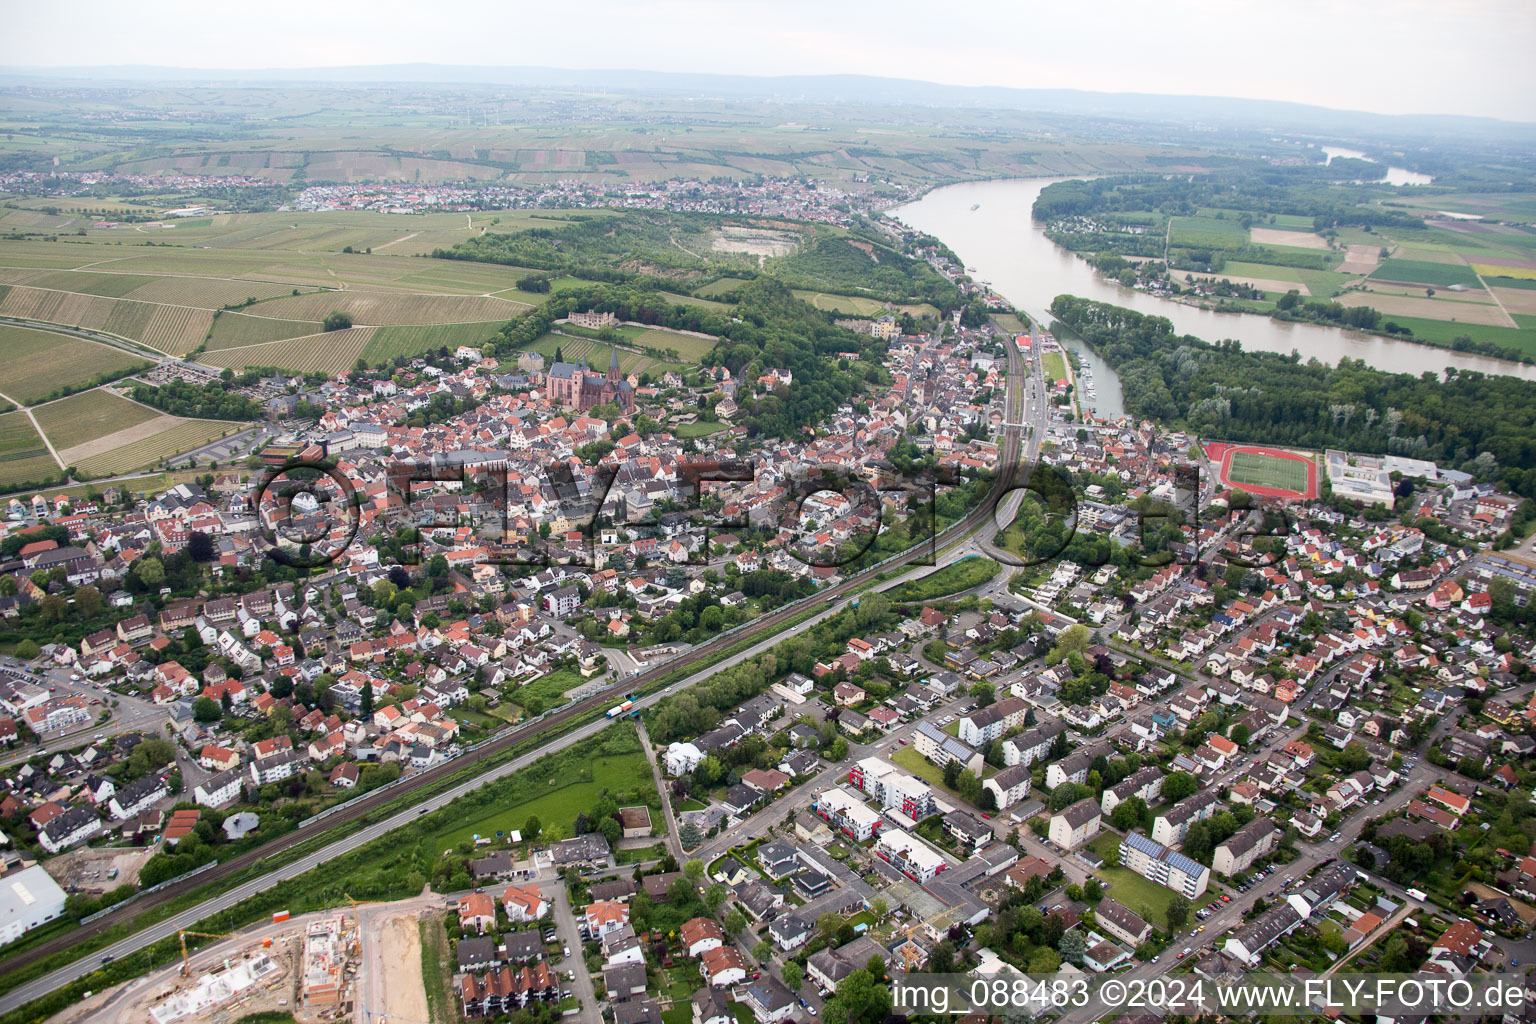 Oppenheim im Bundesland Rheinland-Pfalz, Deutschland von der Drohne aus gesehen